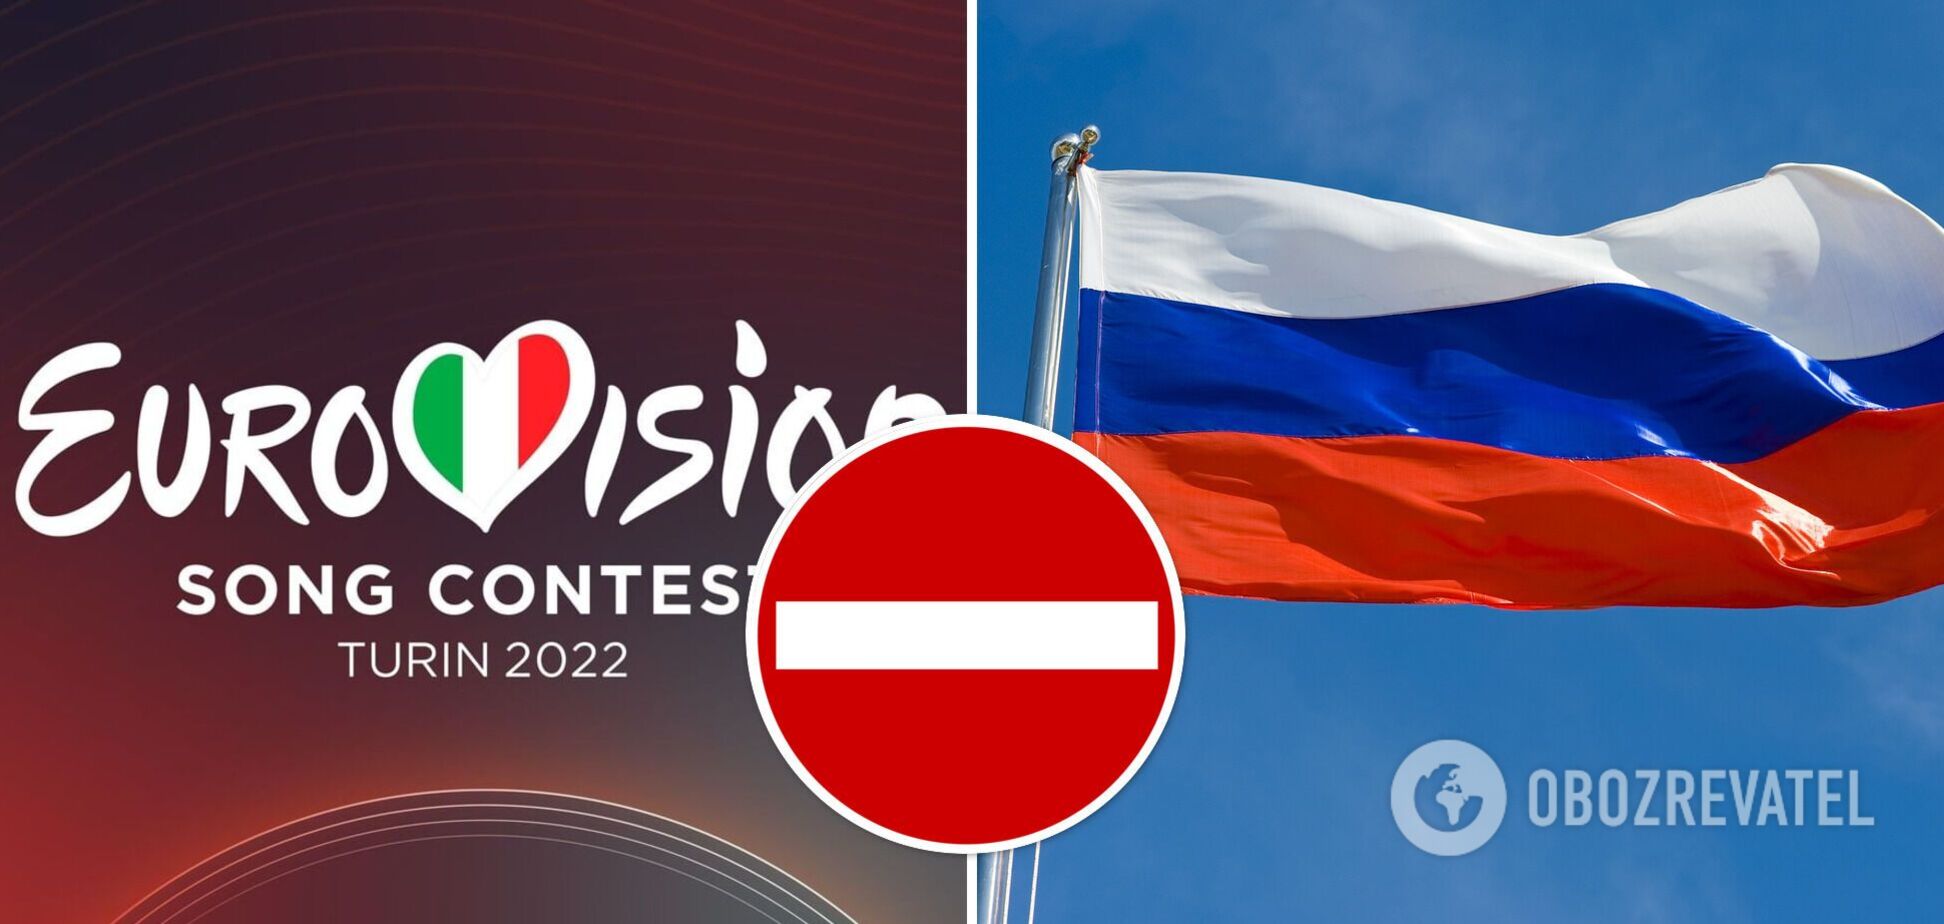 Стало известно, смогут ли россияне проголосовать за участников Евровидения-2022 в Турине